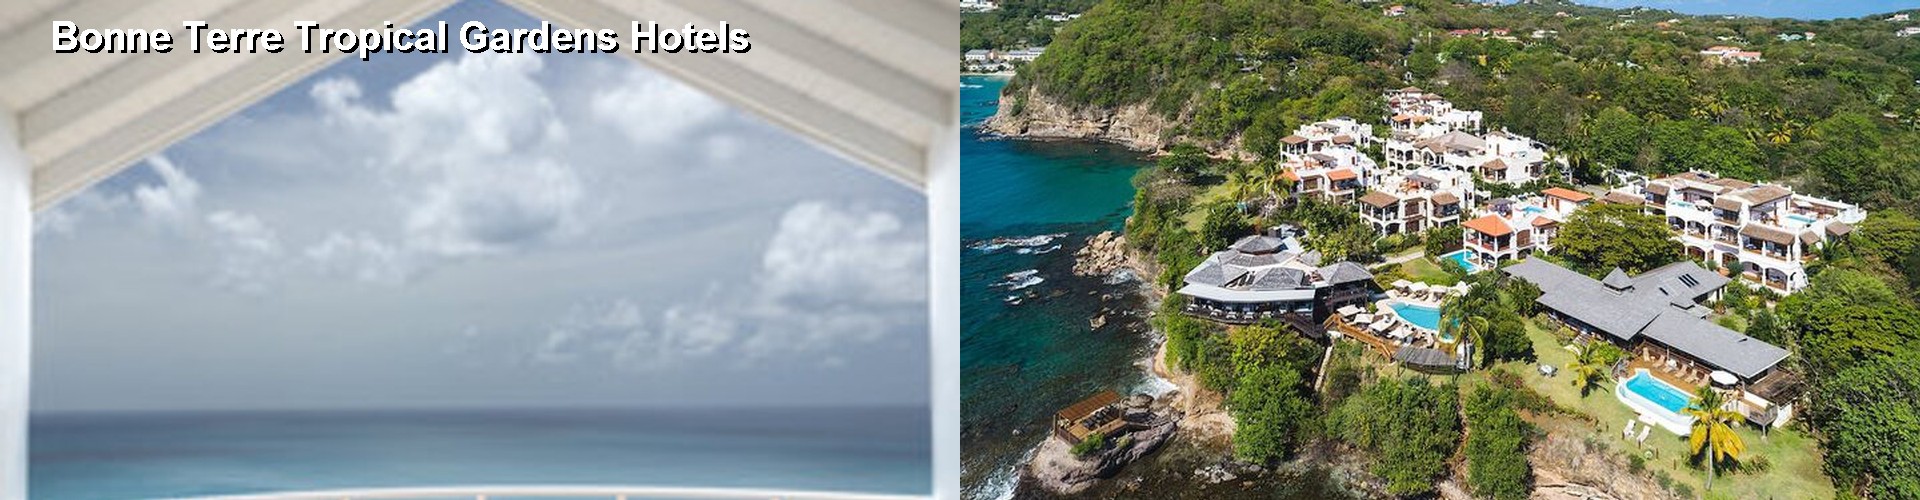 5 Best Hotels near Bonne Terre Tropical Gardens